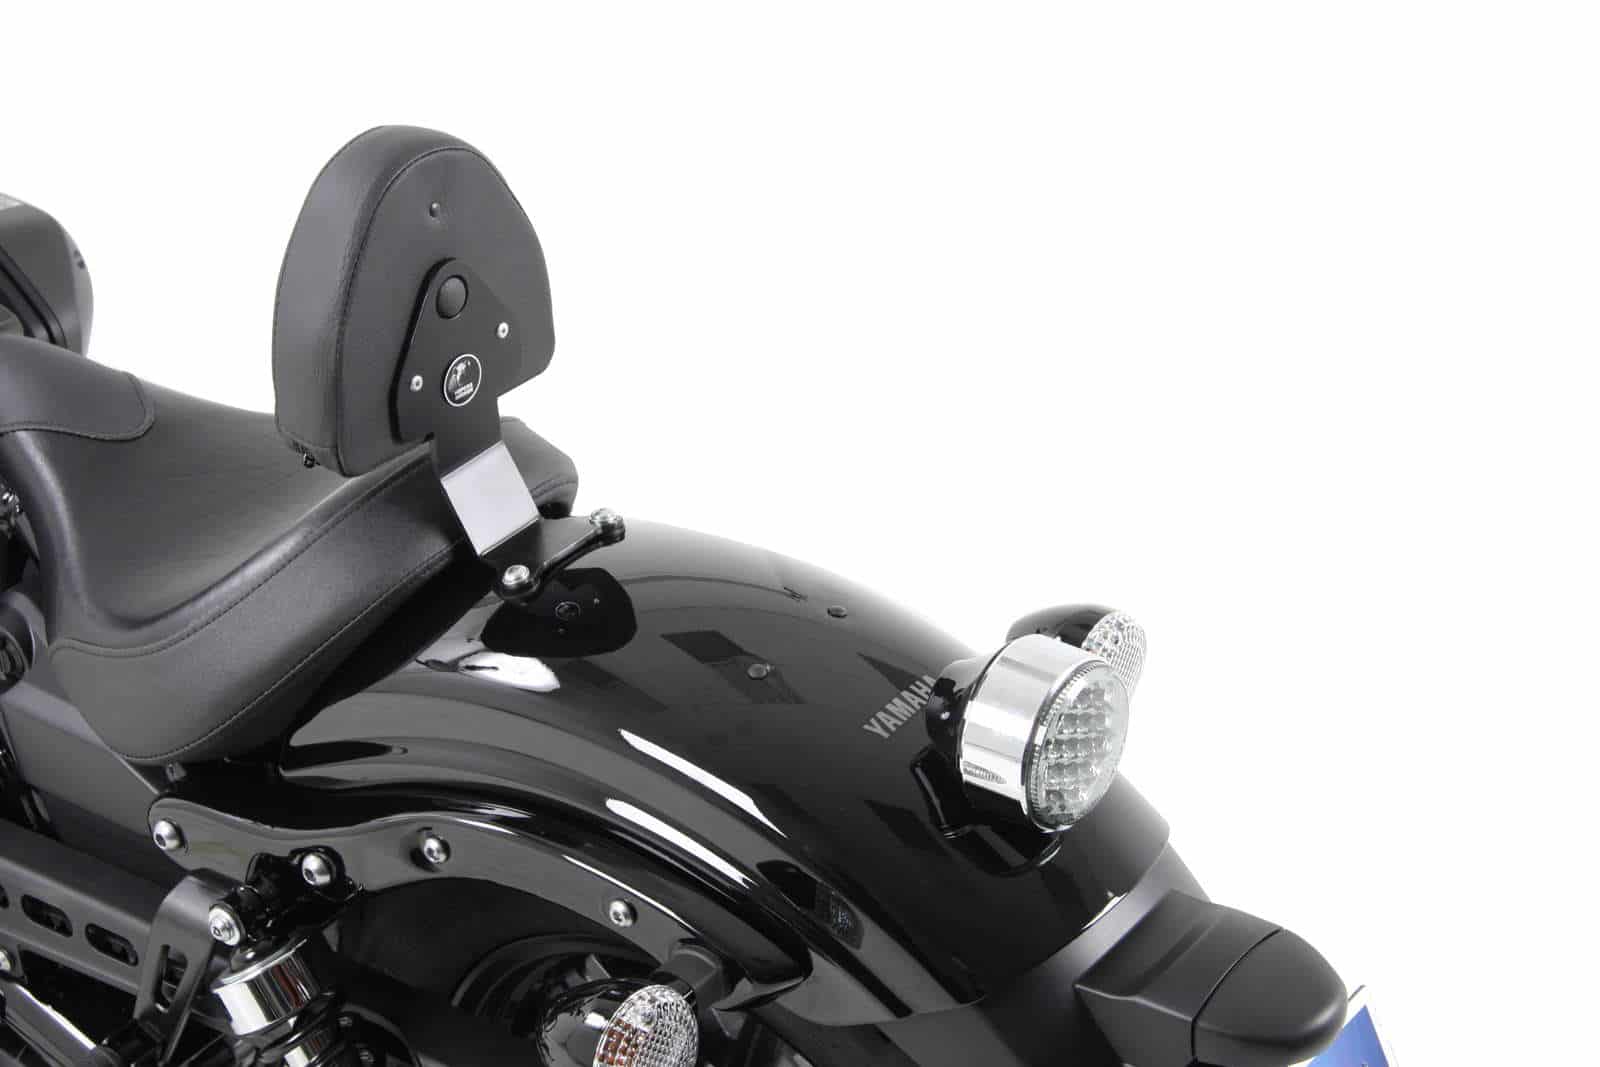 Fahrer-Rückenlehne mit Polster für Kombination mit Solorack 6004539 schwarz für Yamaha XV 950/R (2013-2020)